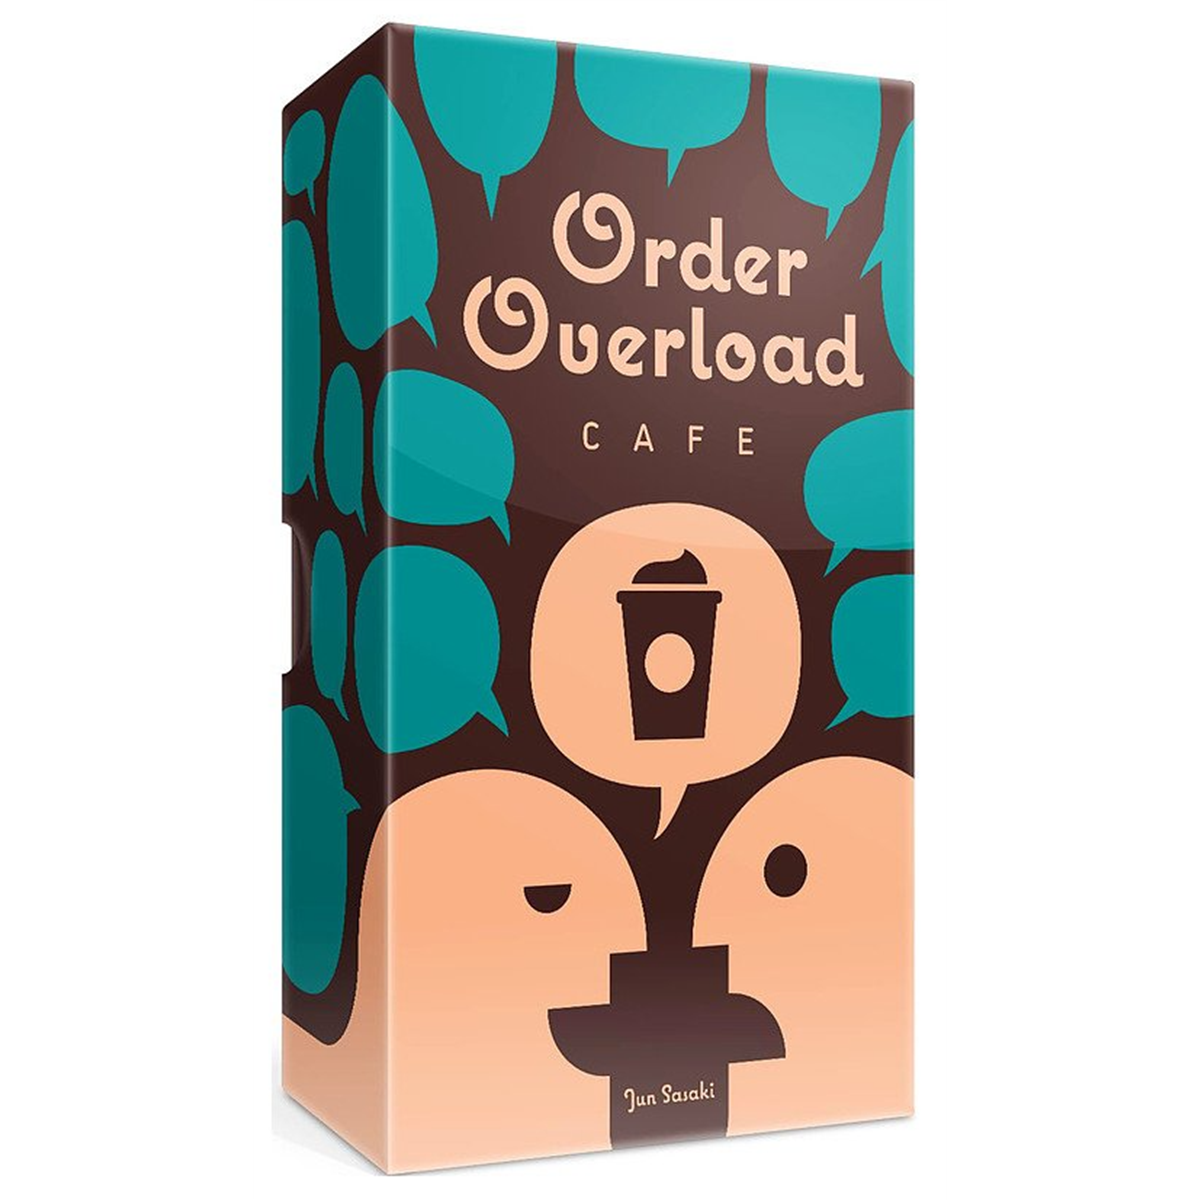 Order overload café